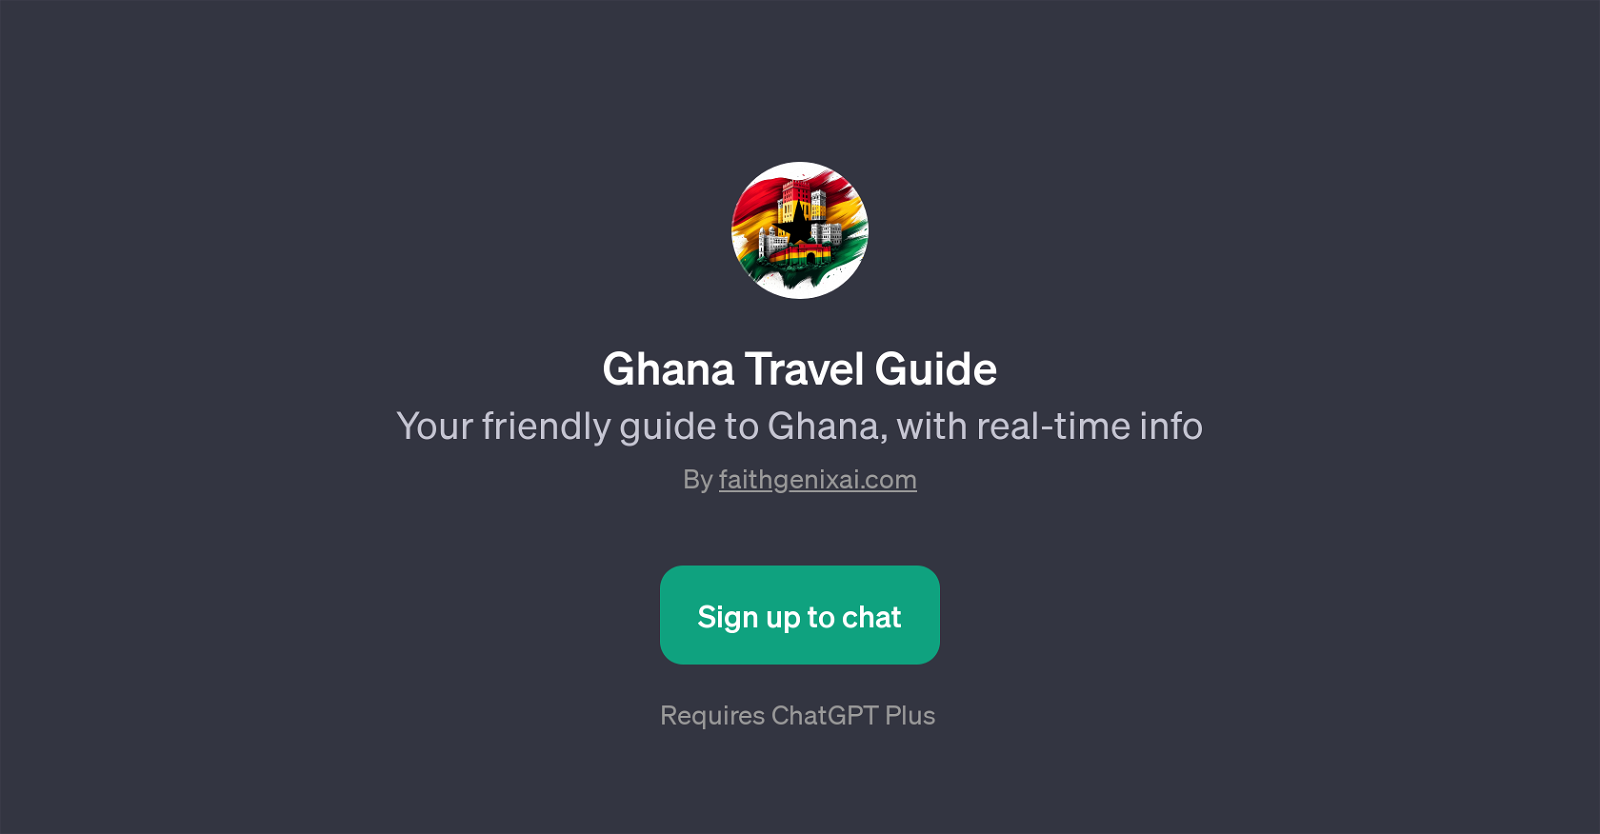 Ghana Travel Guide website